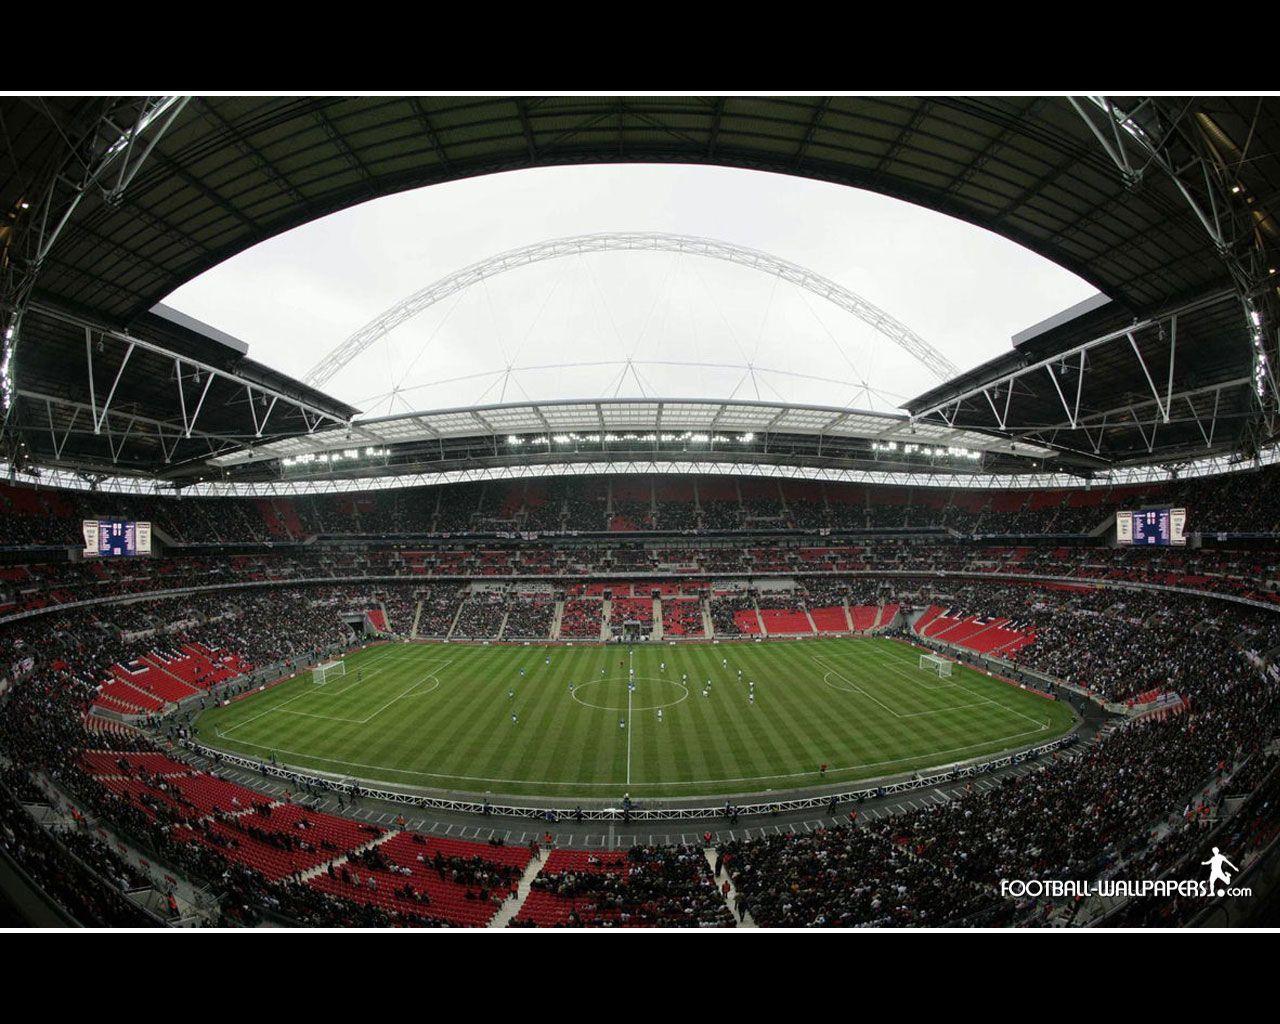 Football Rivalries Visit to Wembley